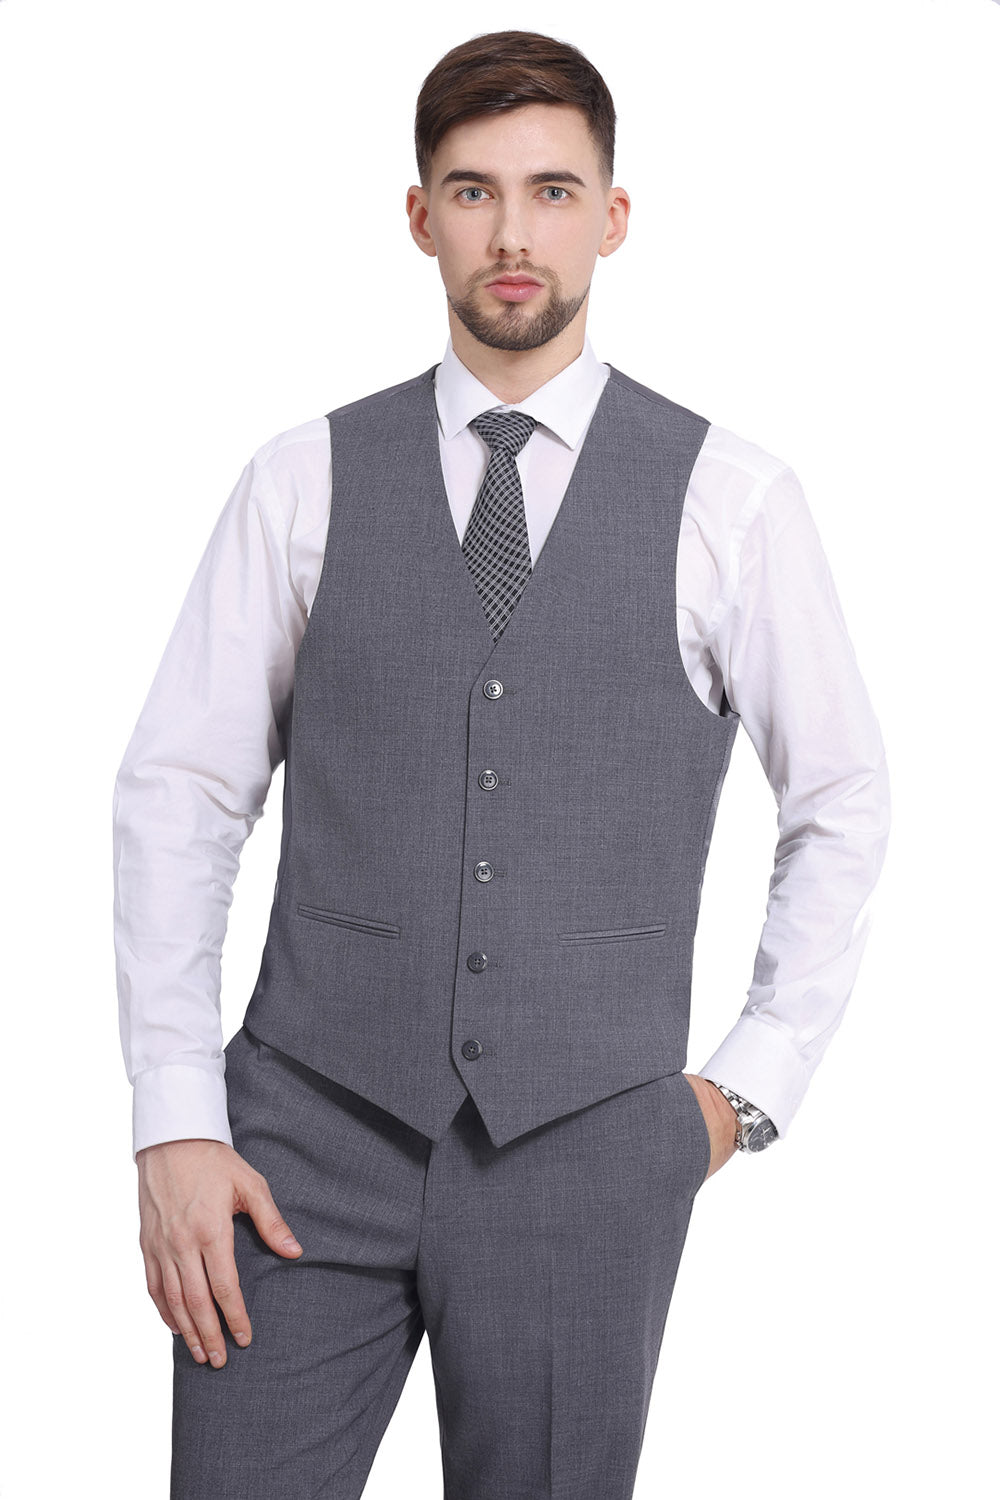 Grey Color Men's Suits 3-Piece Slim Fit